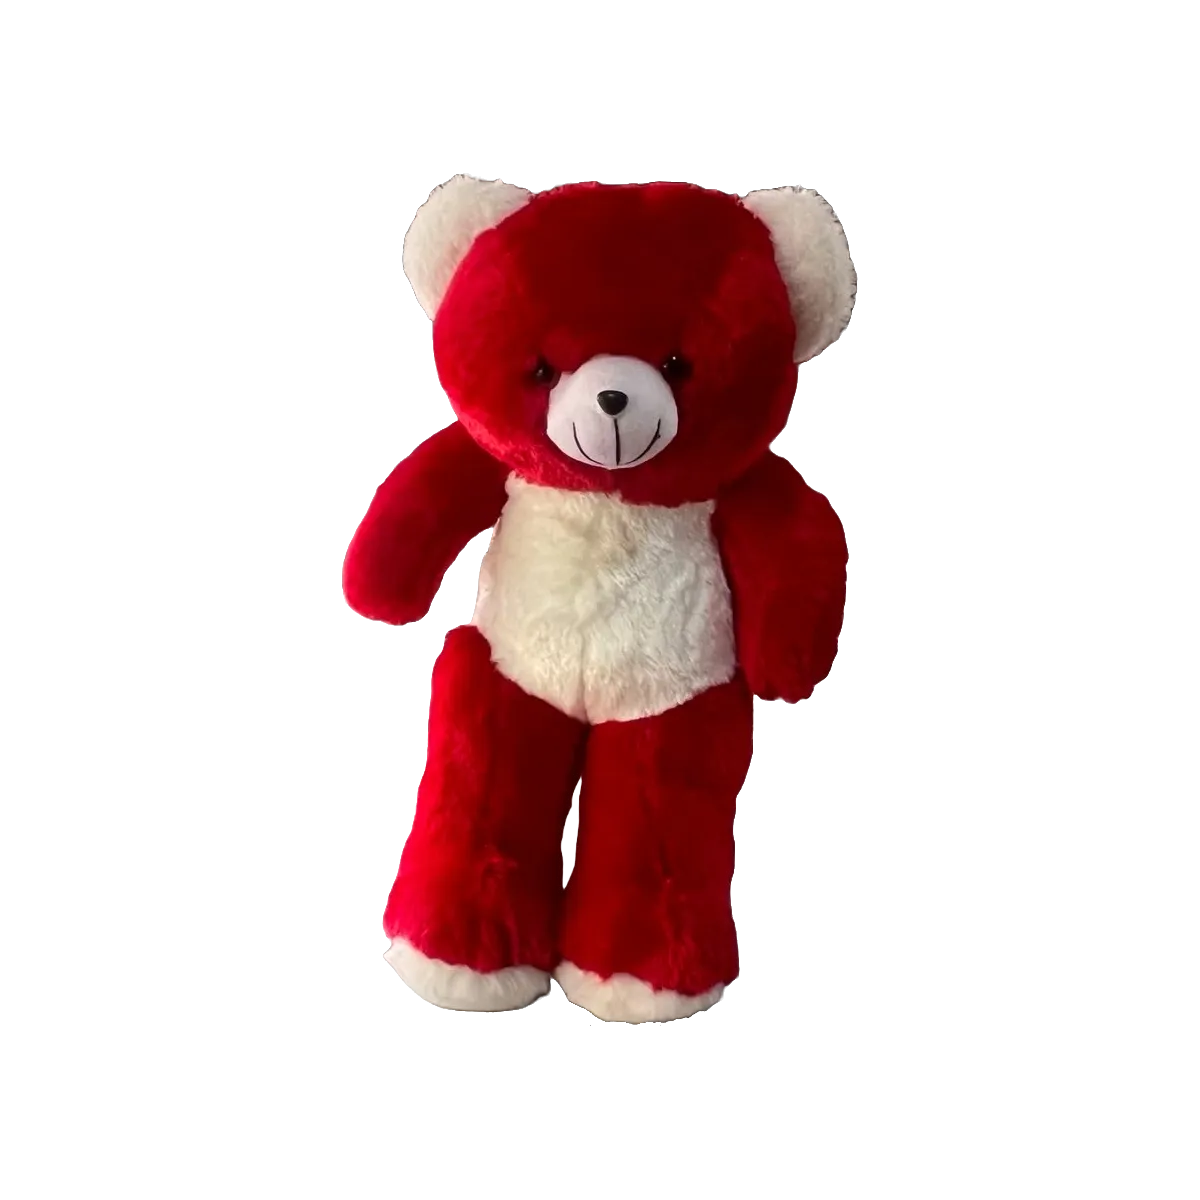 Teddy Bear Medium